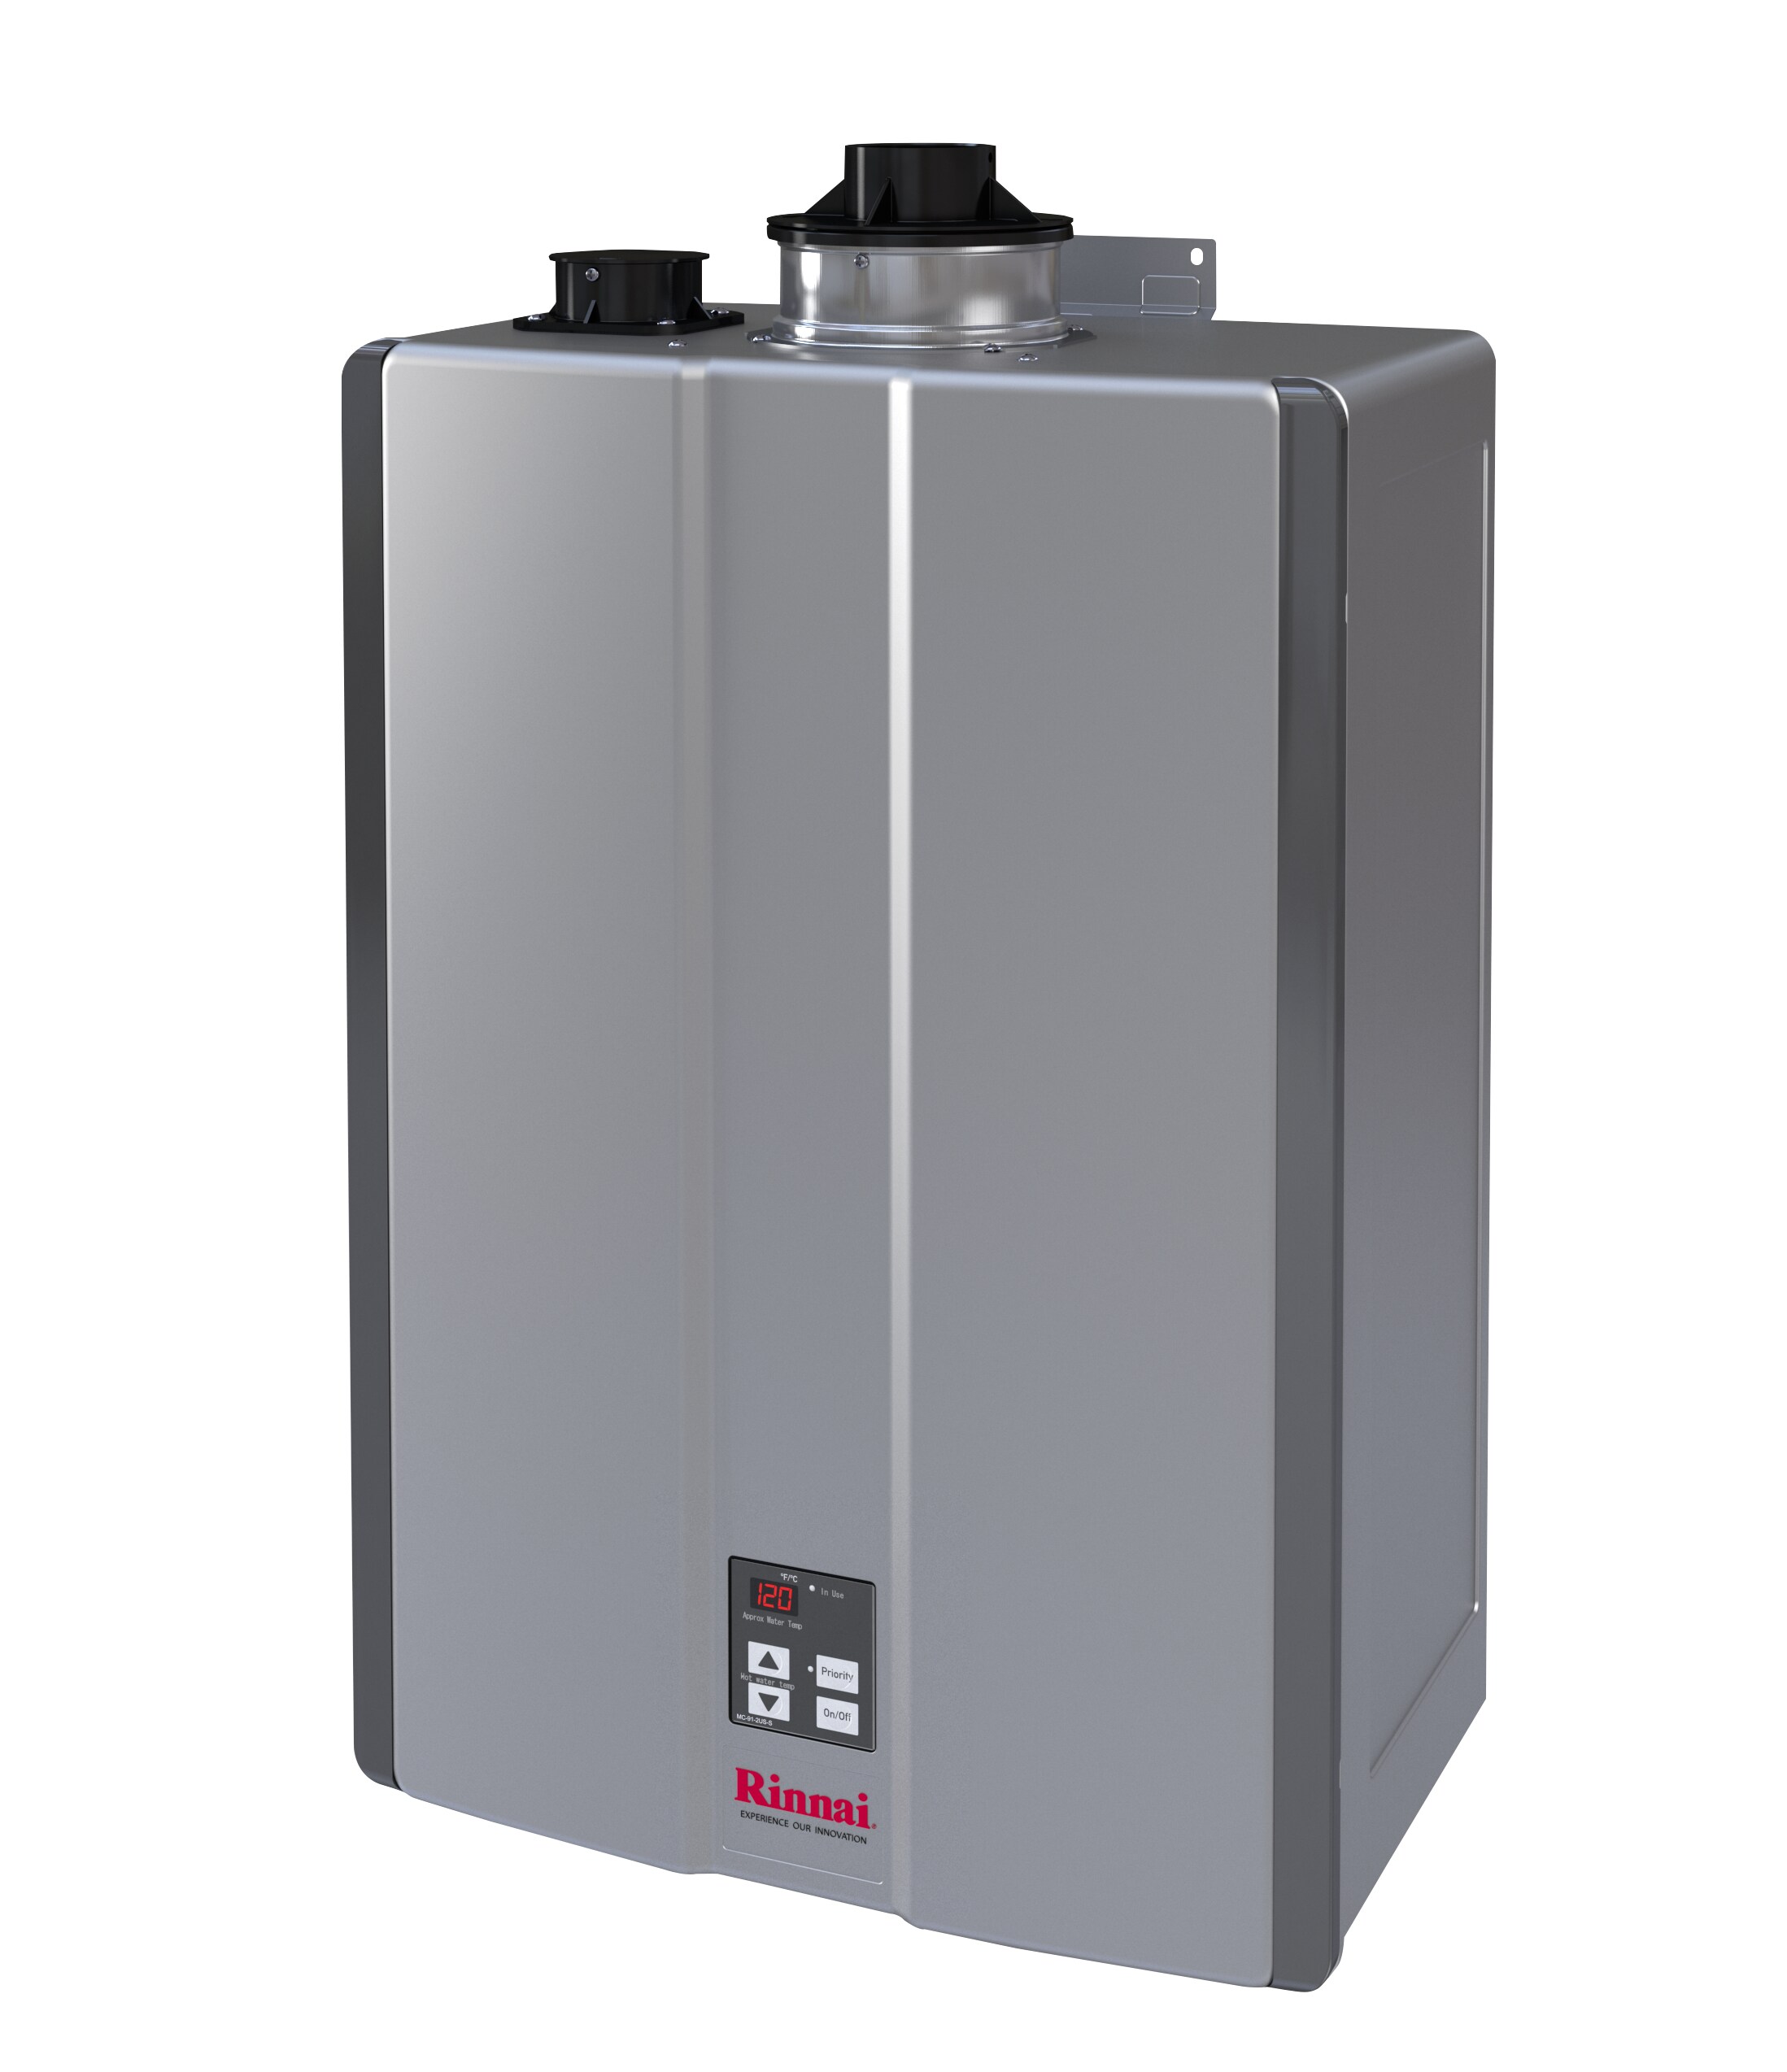 Rinnai water heater